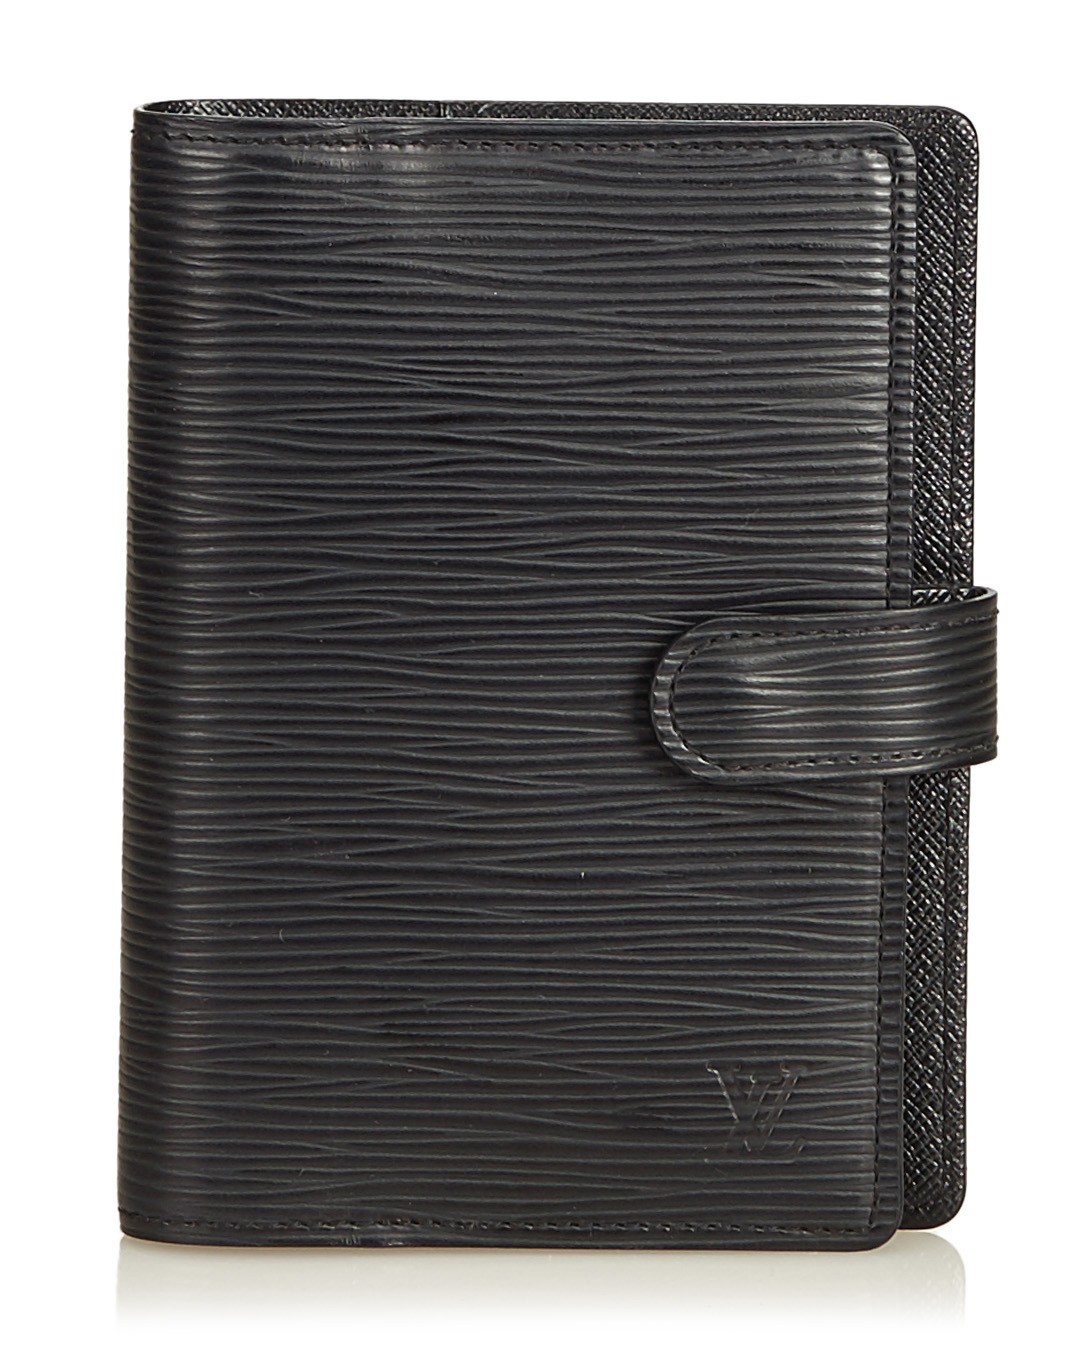 Louis Vuitton black epi leather PM Planner